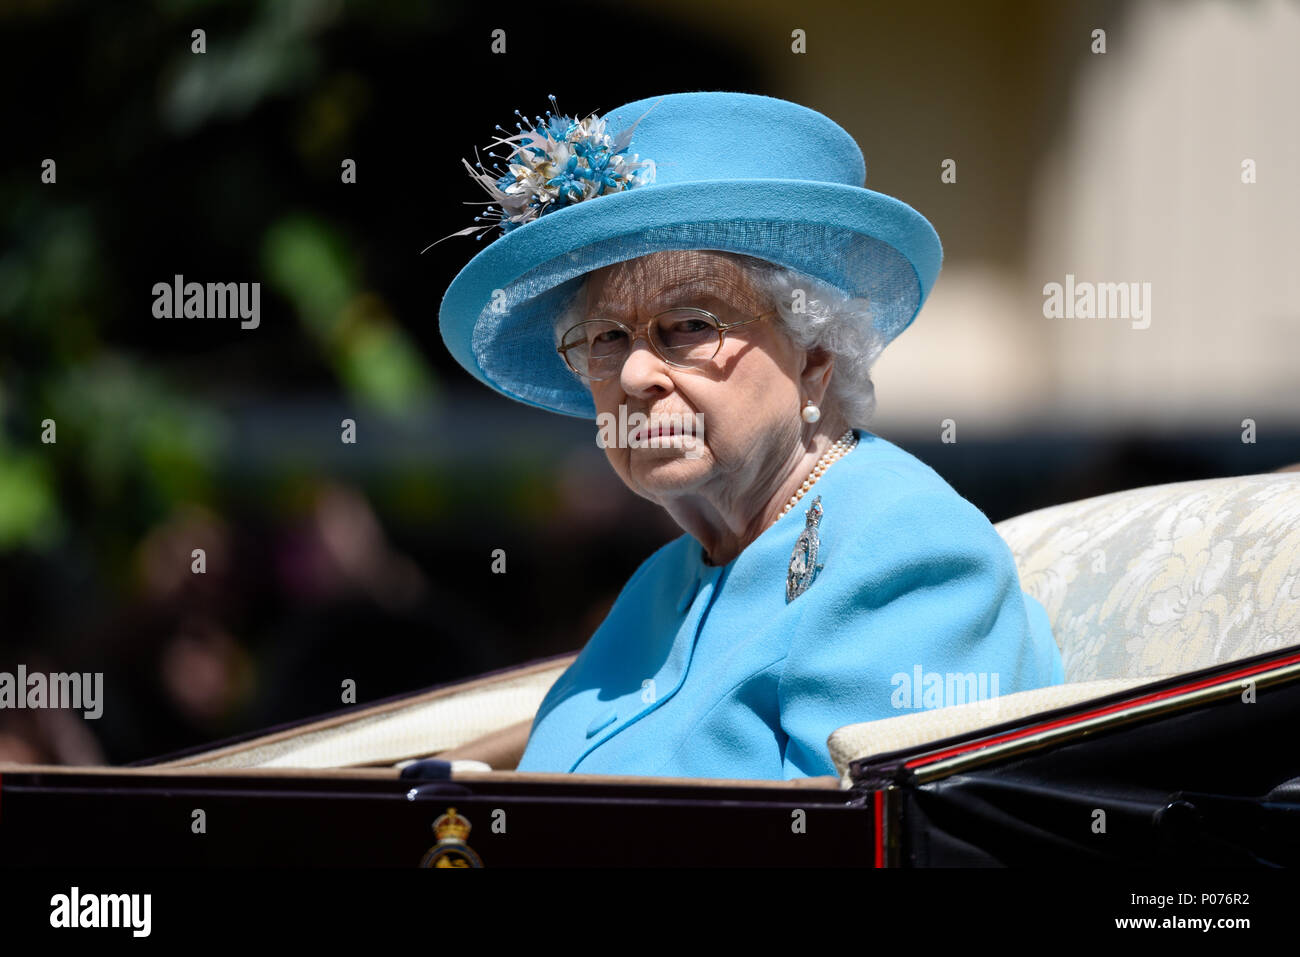 Truppe der Farbe 2018. Königin Elizabeth II., die Königin, allein in einer Kutsche in der Mall, in blauem Angela Kelly Design Outfit Stockfoto